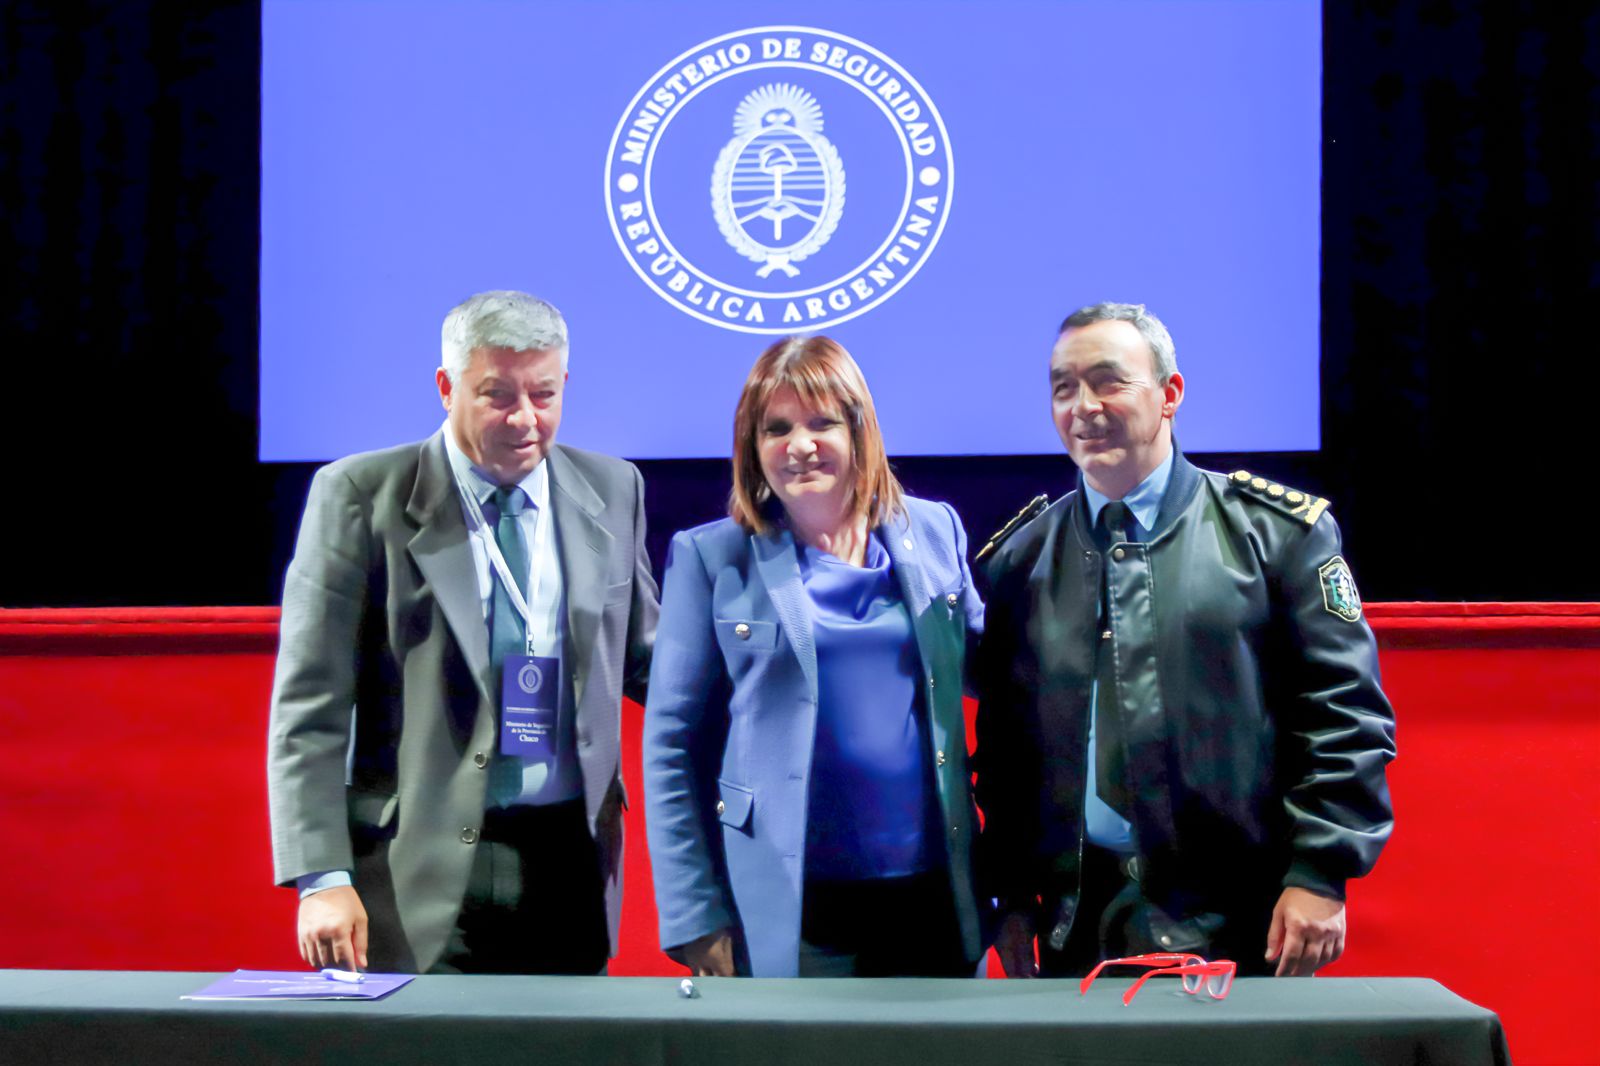 Hugo Matkovich Participa en Importante Encuentro de Seguridad en Mendoza y Firma Convenios Clave para la Provincia